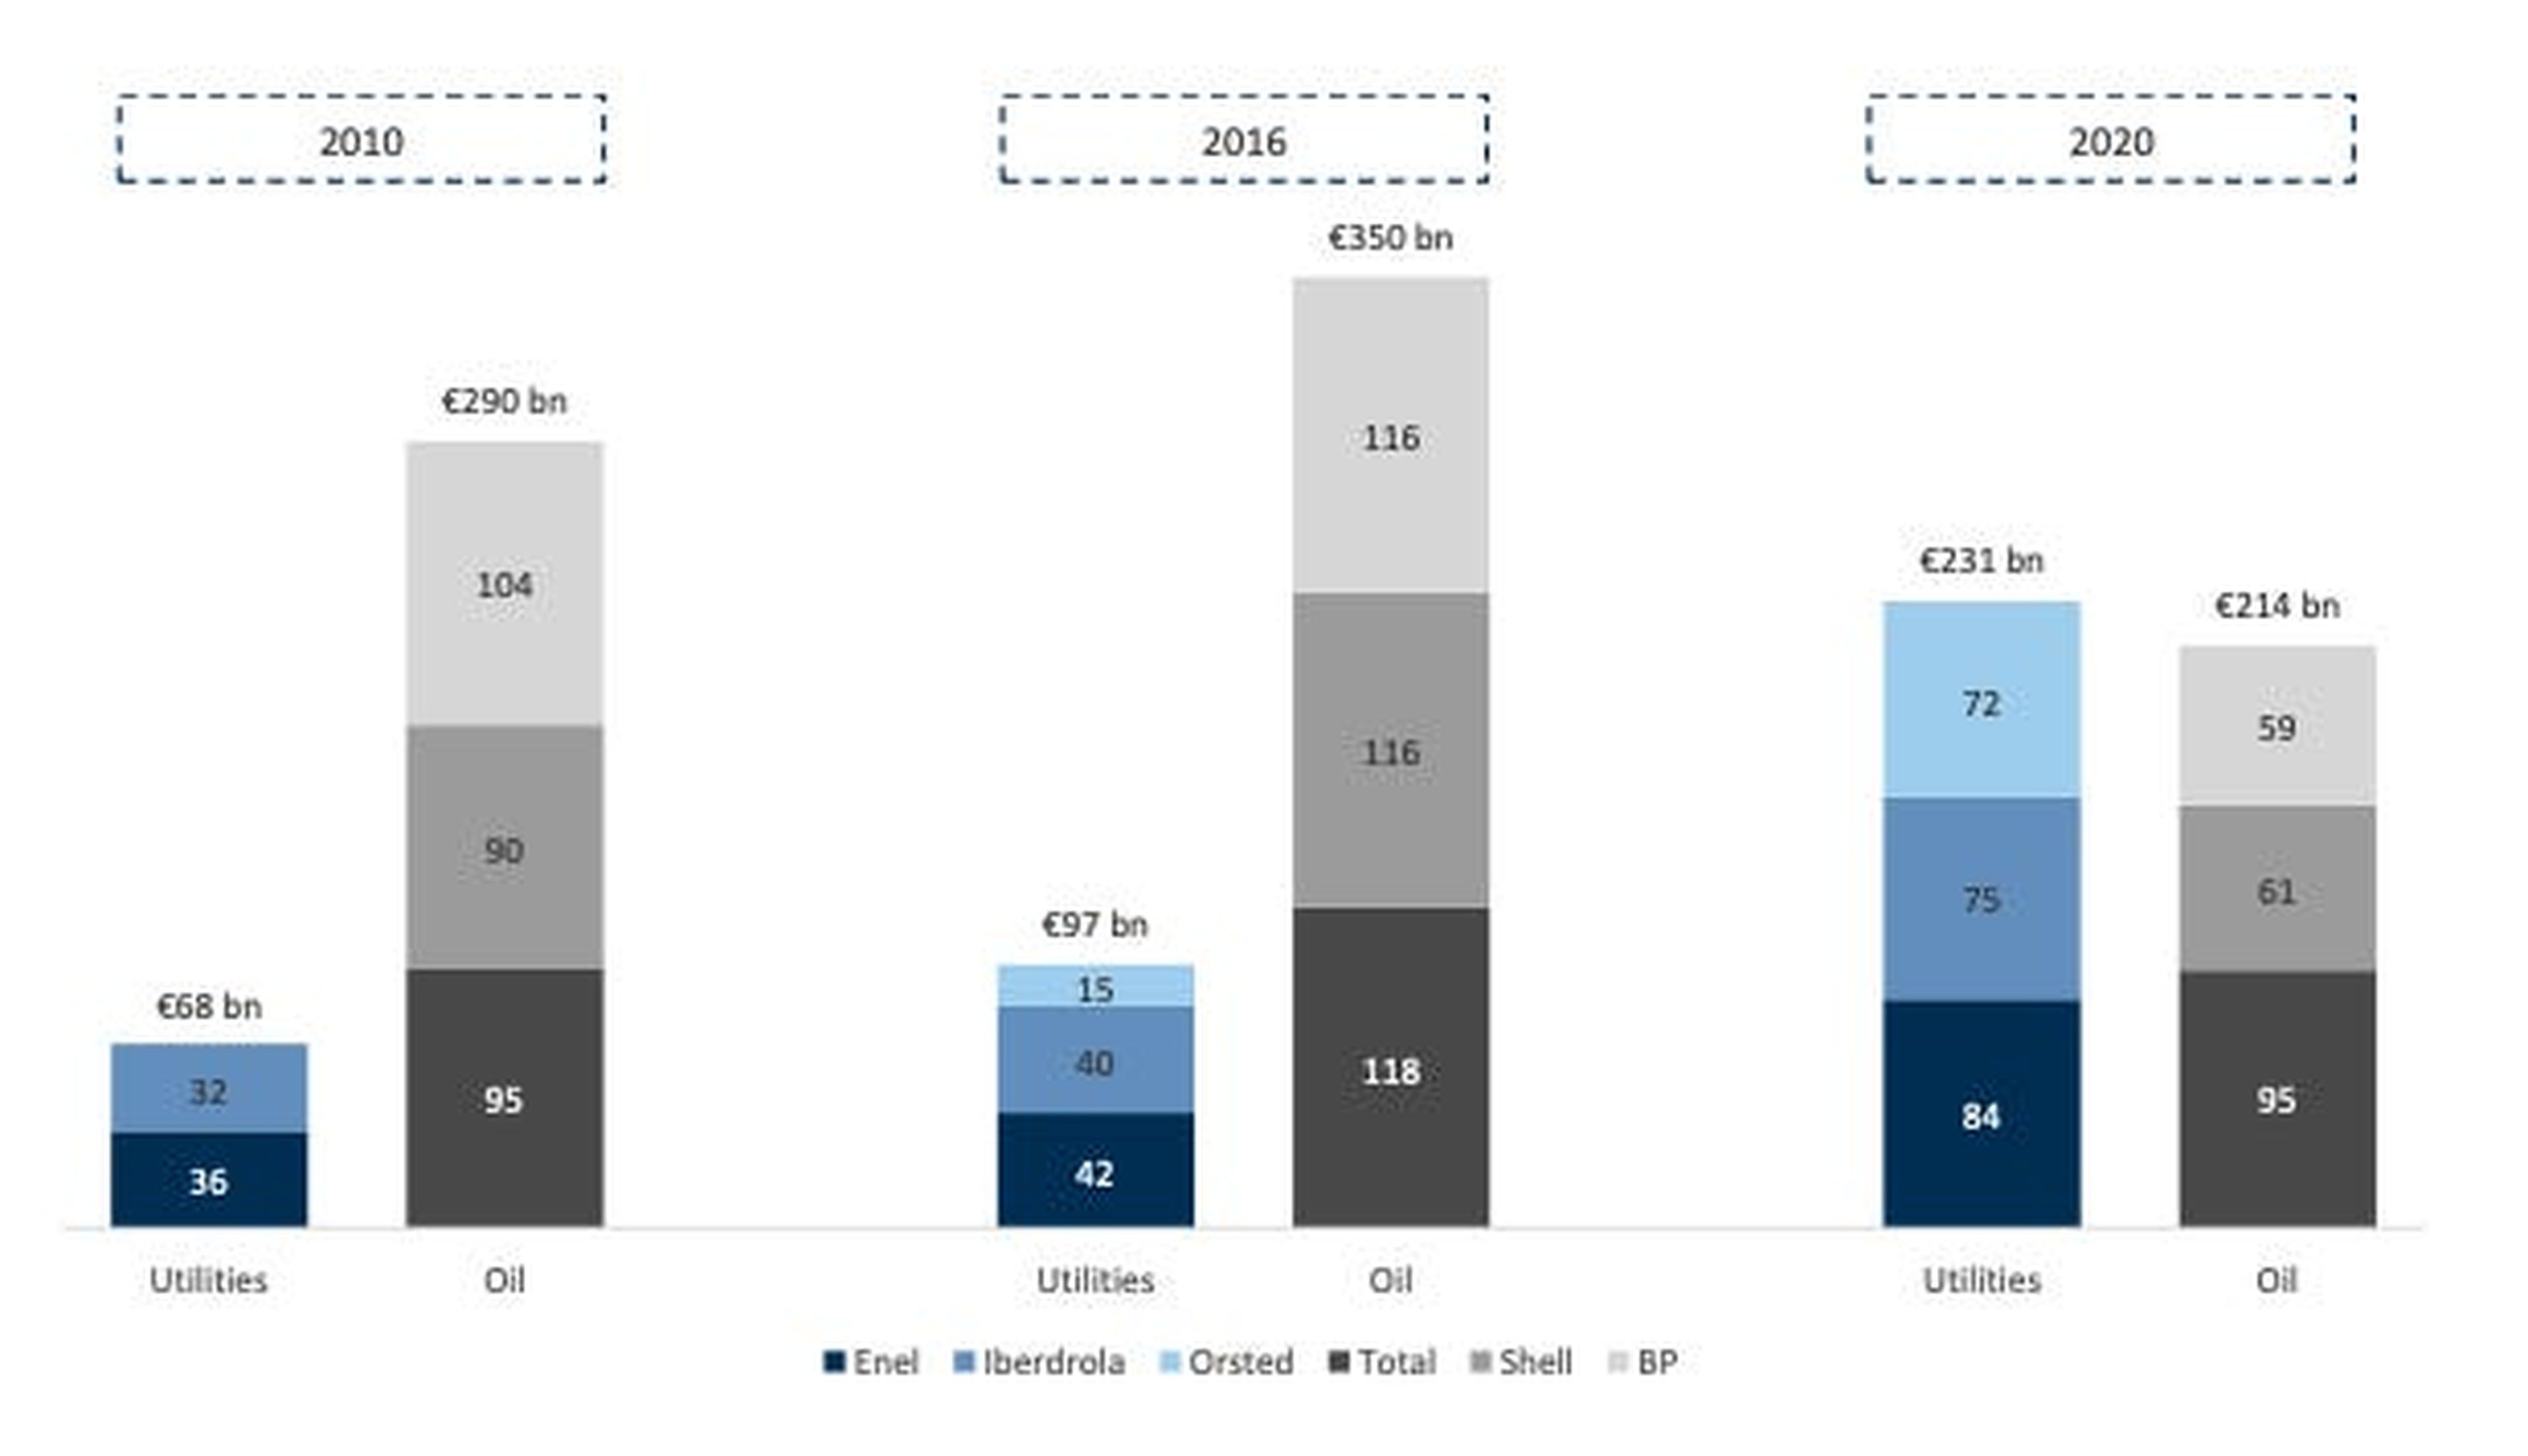 Los campeones climáticos representan una parte cada vez mayor del sector energético. Capitalización de mercado de los 3 primeros (según la capitalización de mercado actual) de European GEMS vs. Grandes petroleras europeas (miles de millones de euros).